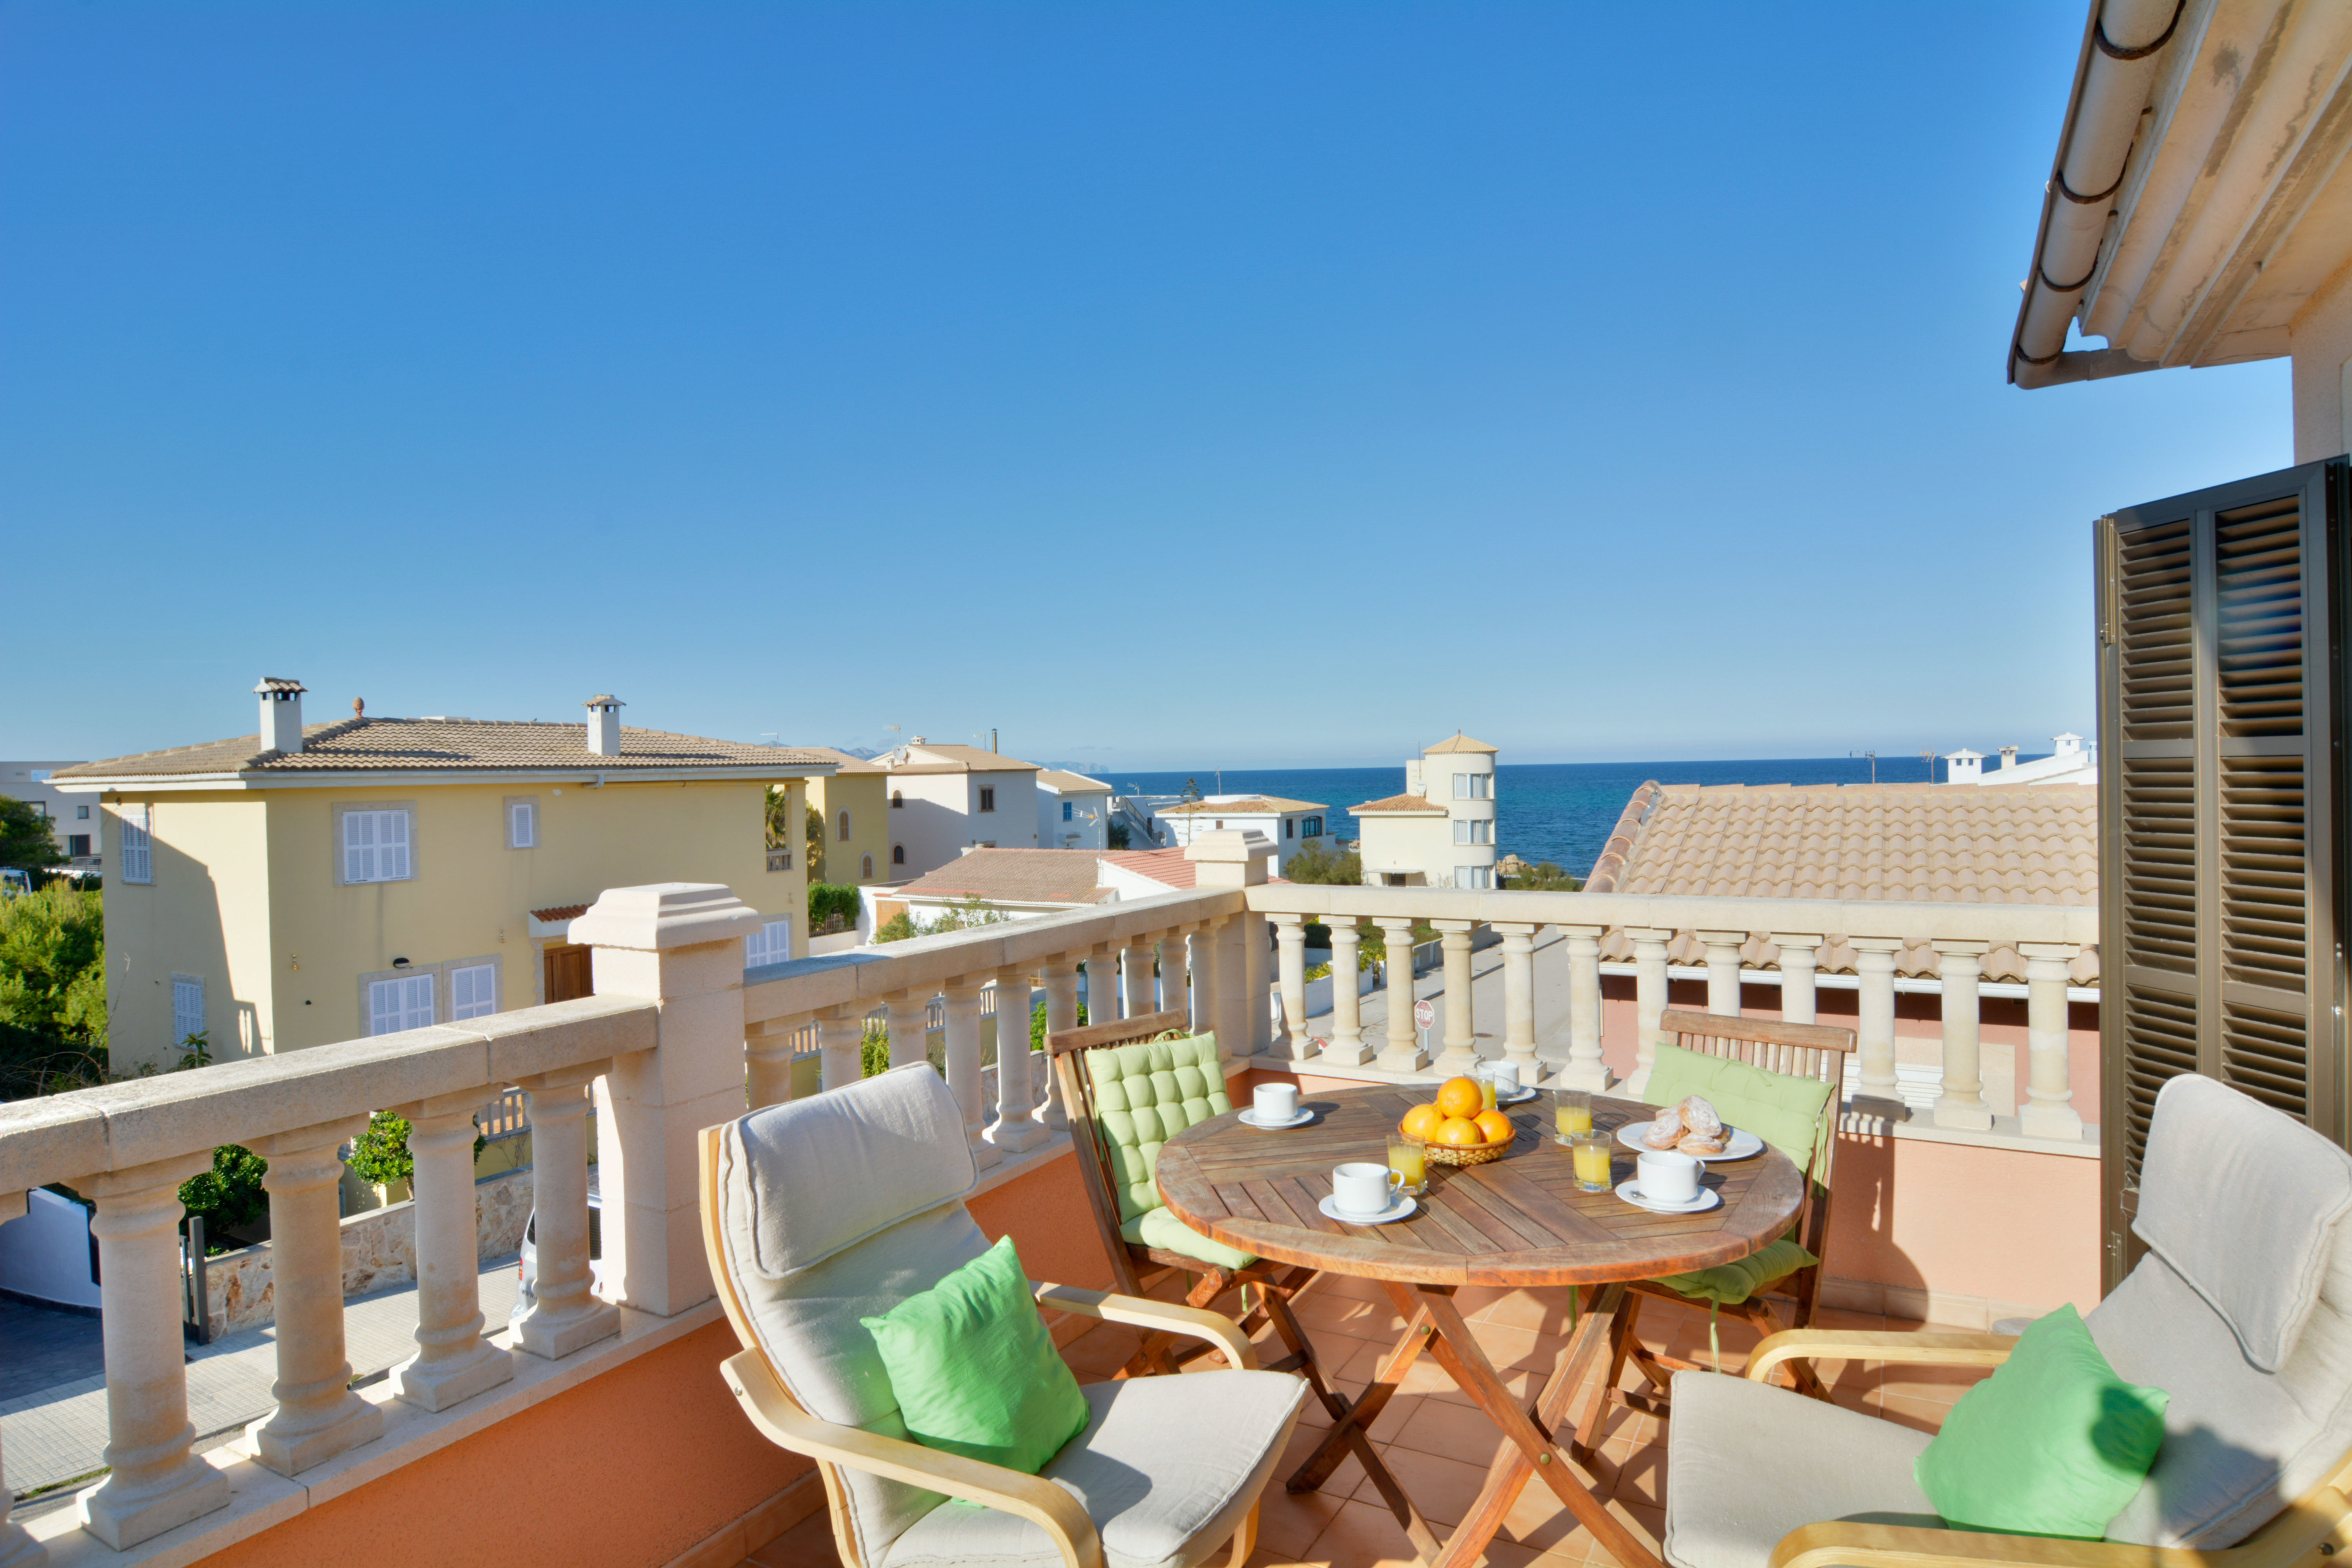 Son Serra beach apartment sea views and terrace Ferienwohnung in Spanien